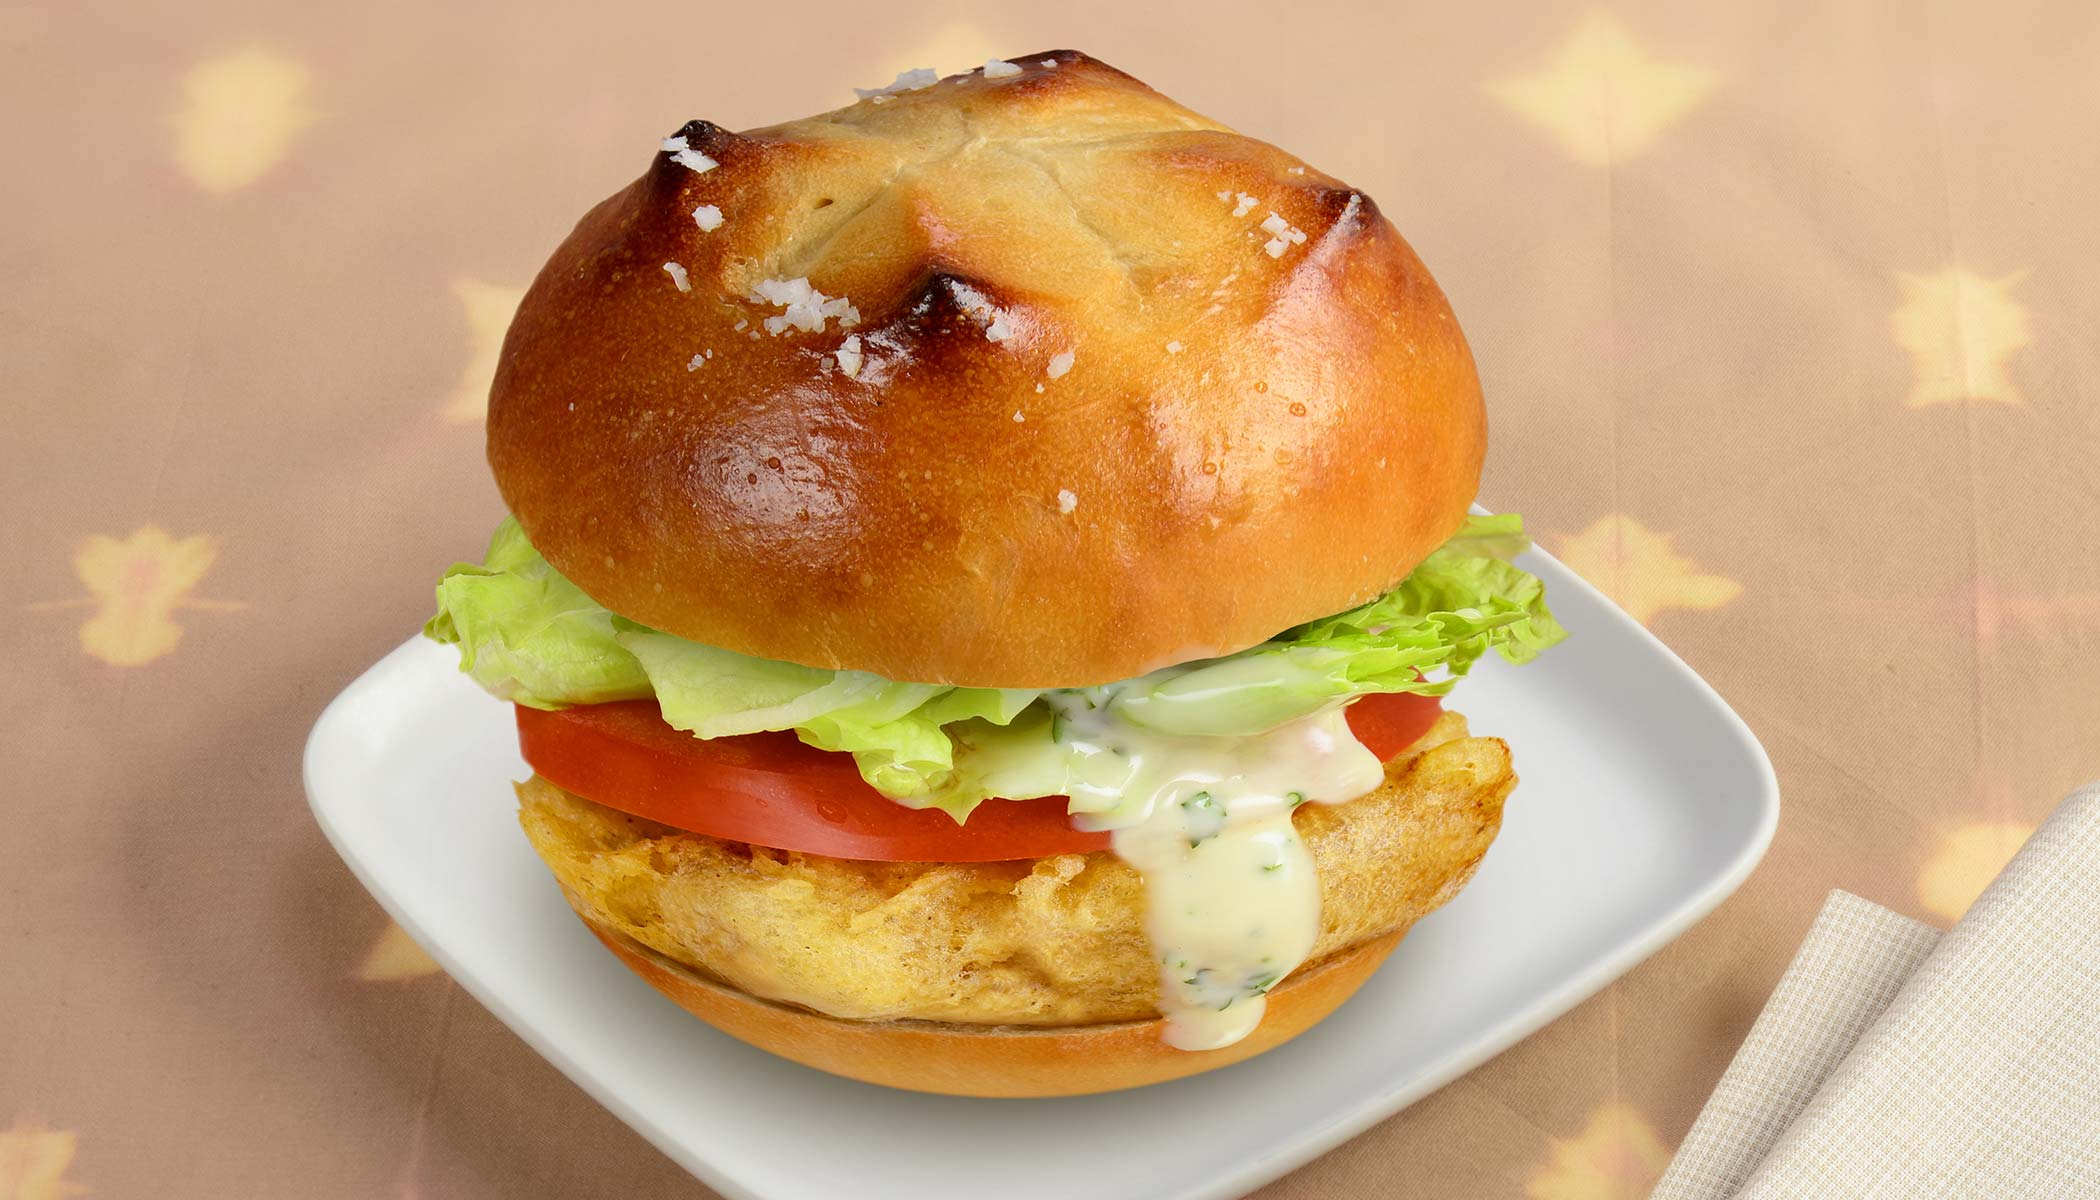 Zojirushi Recipe – Crispy Fish Burger